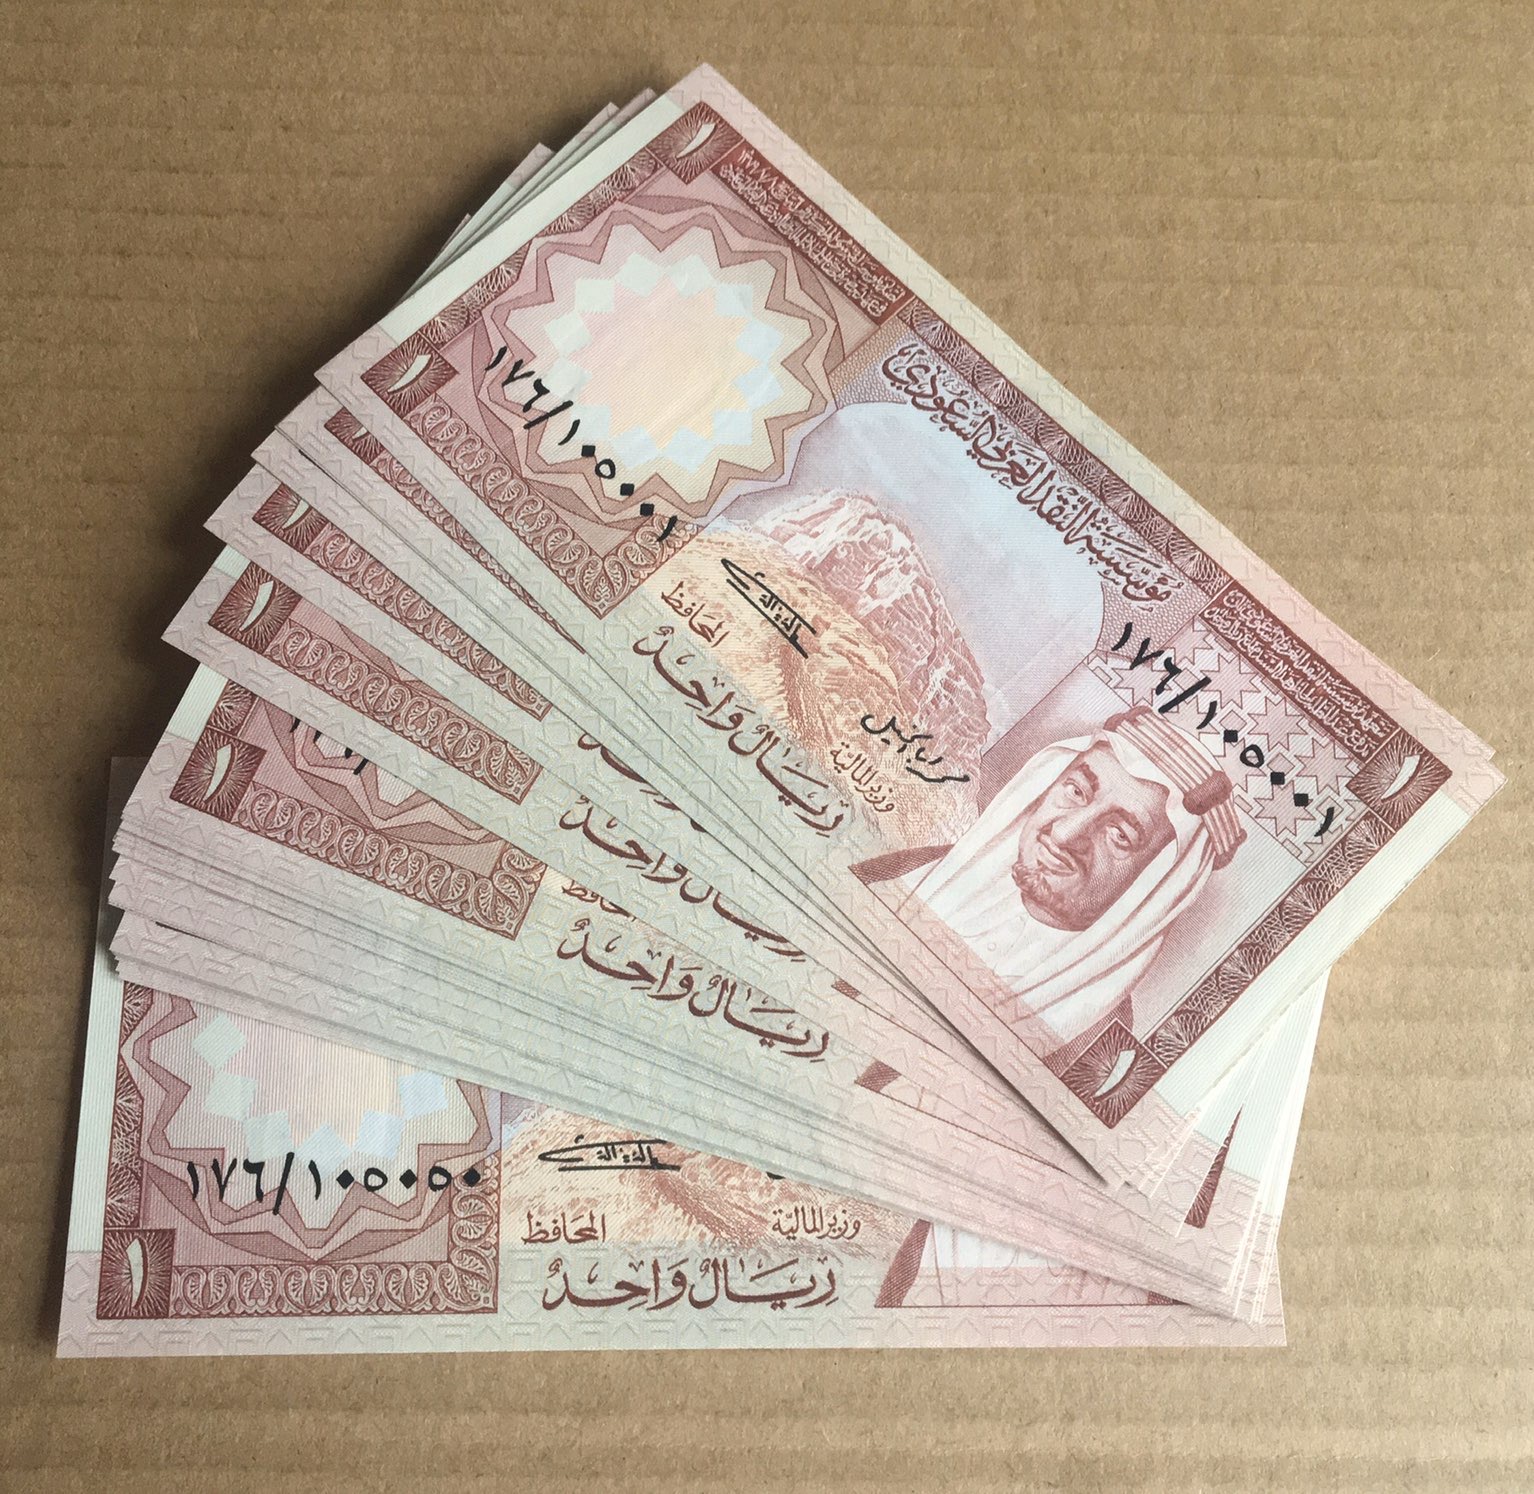 Lot 50 Banknotes 1977 Saudi Arabia 1 Riyal P-16 King Khalid Consecutive Numbers UNC